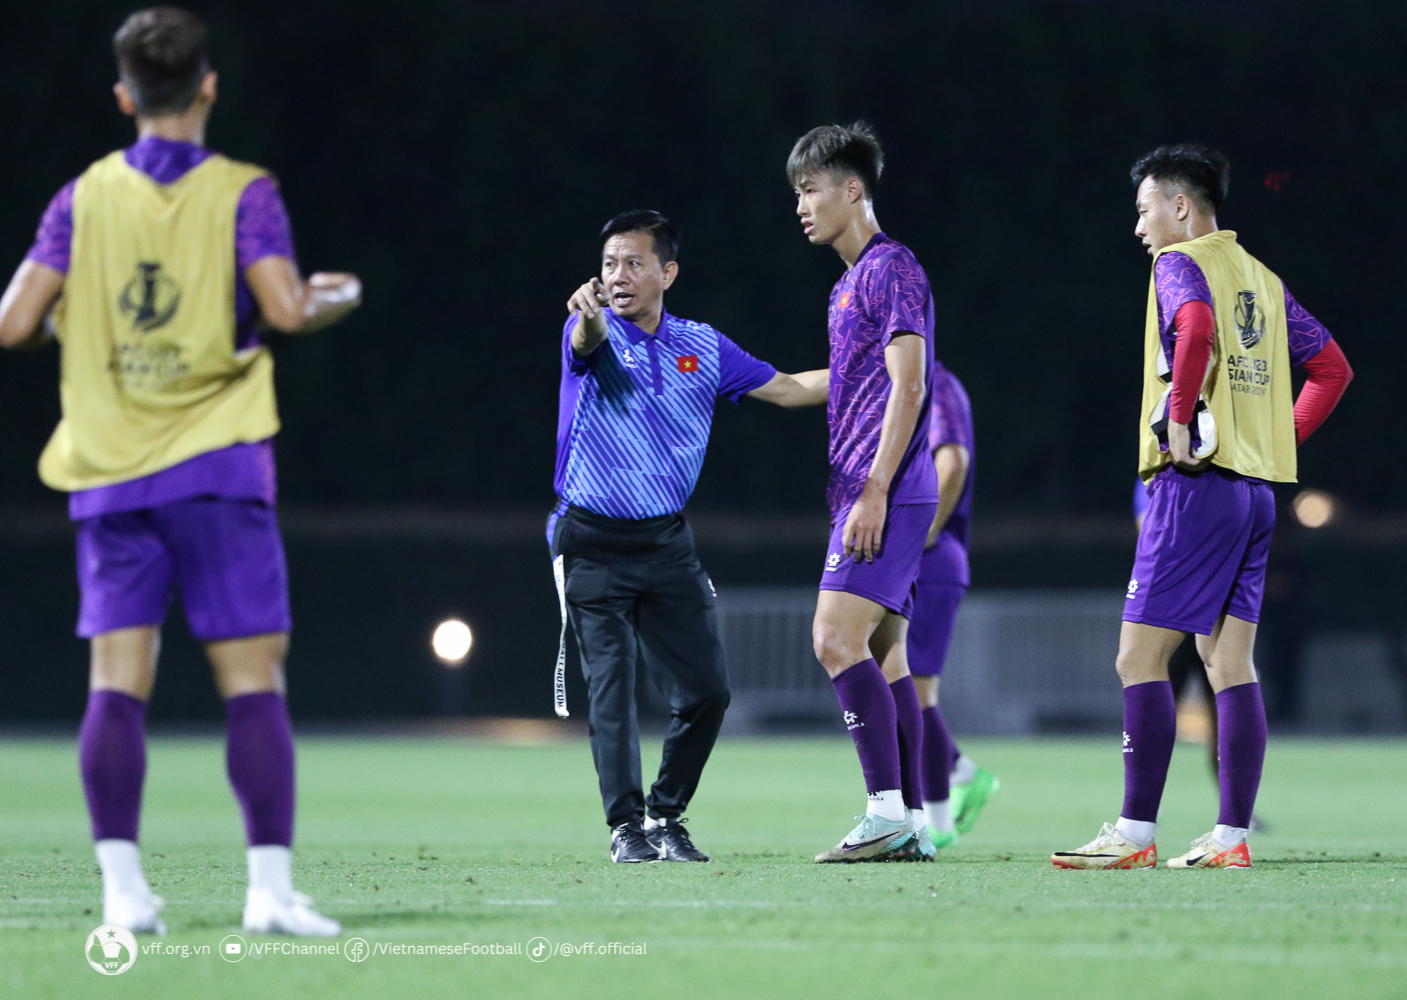 Loại 4 cái tên U23 Việt Nam, HLV Hoàng Anh Tuấn nói lời từ đáy lòng - ảnh 1